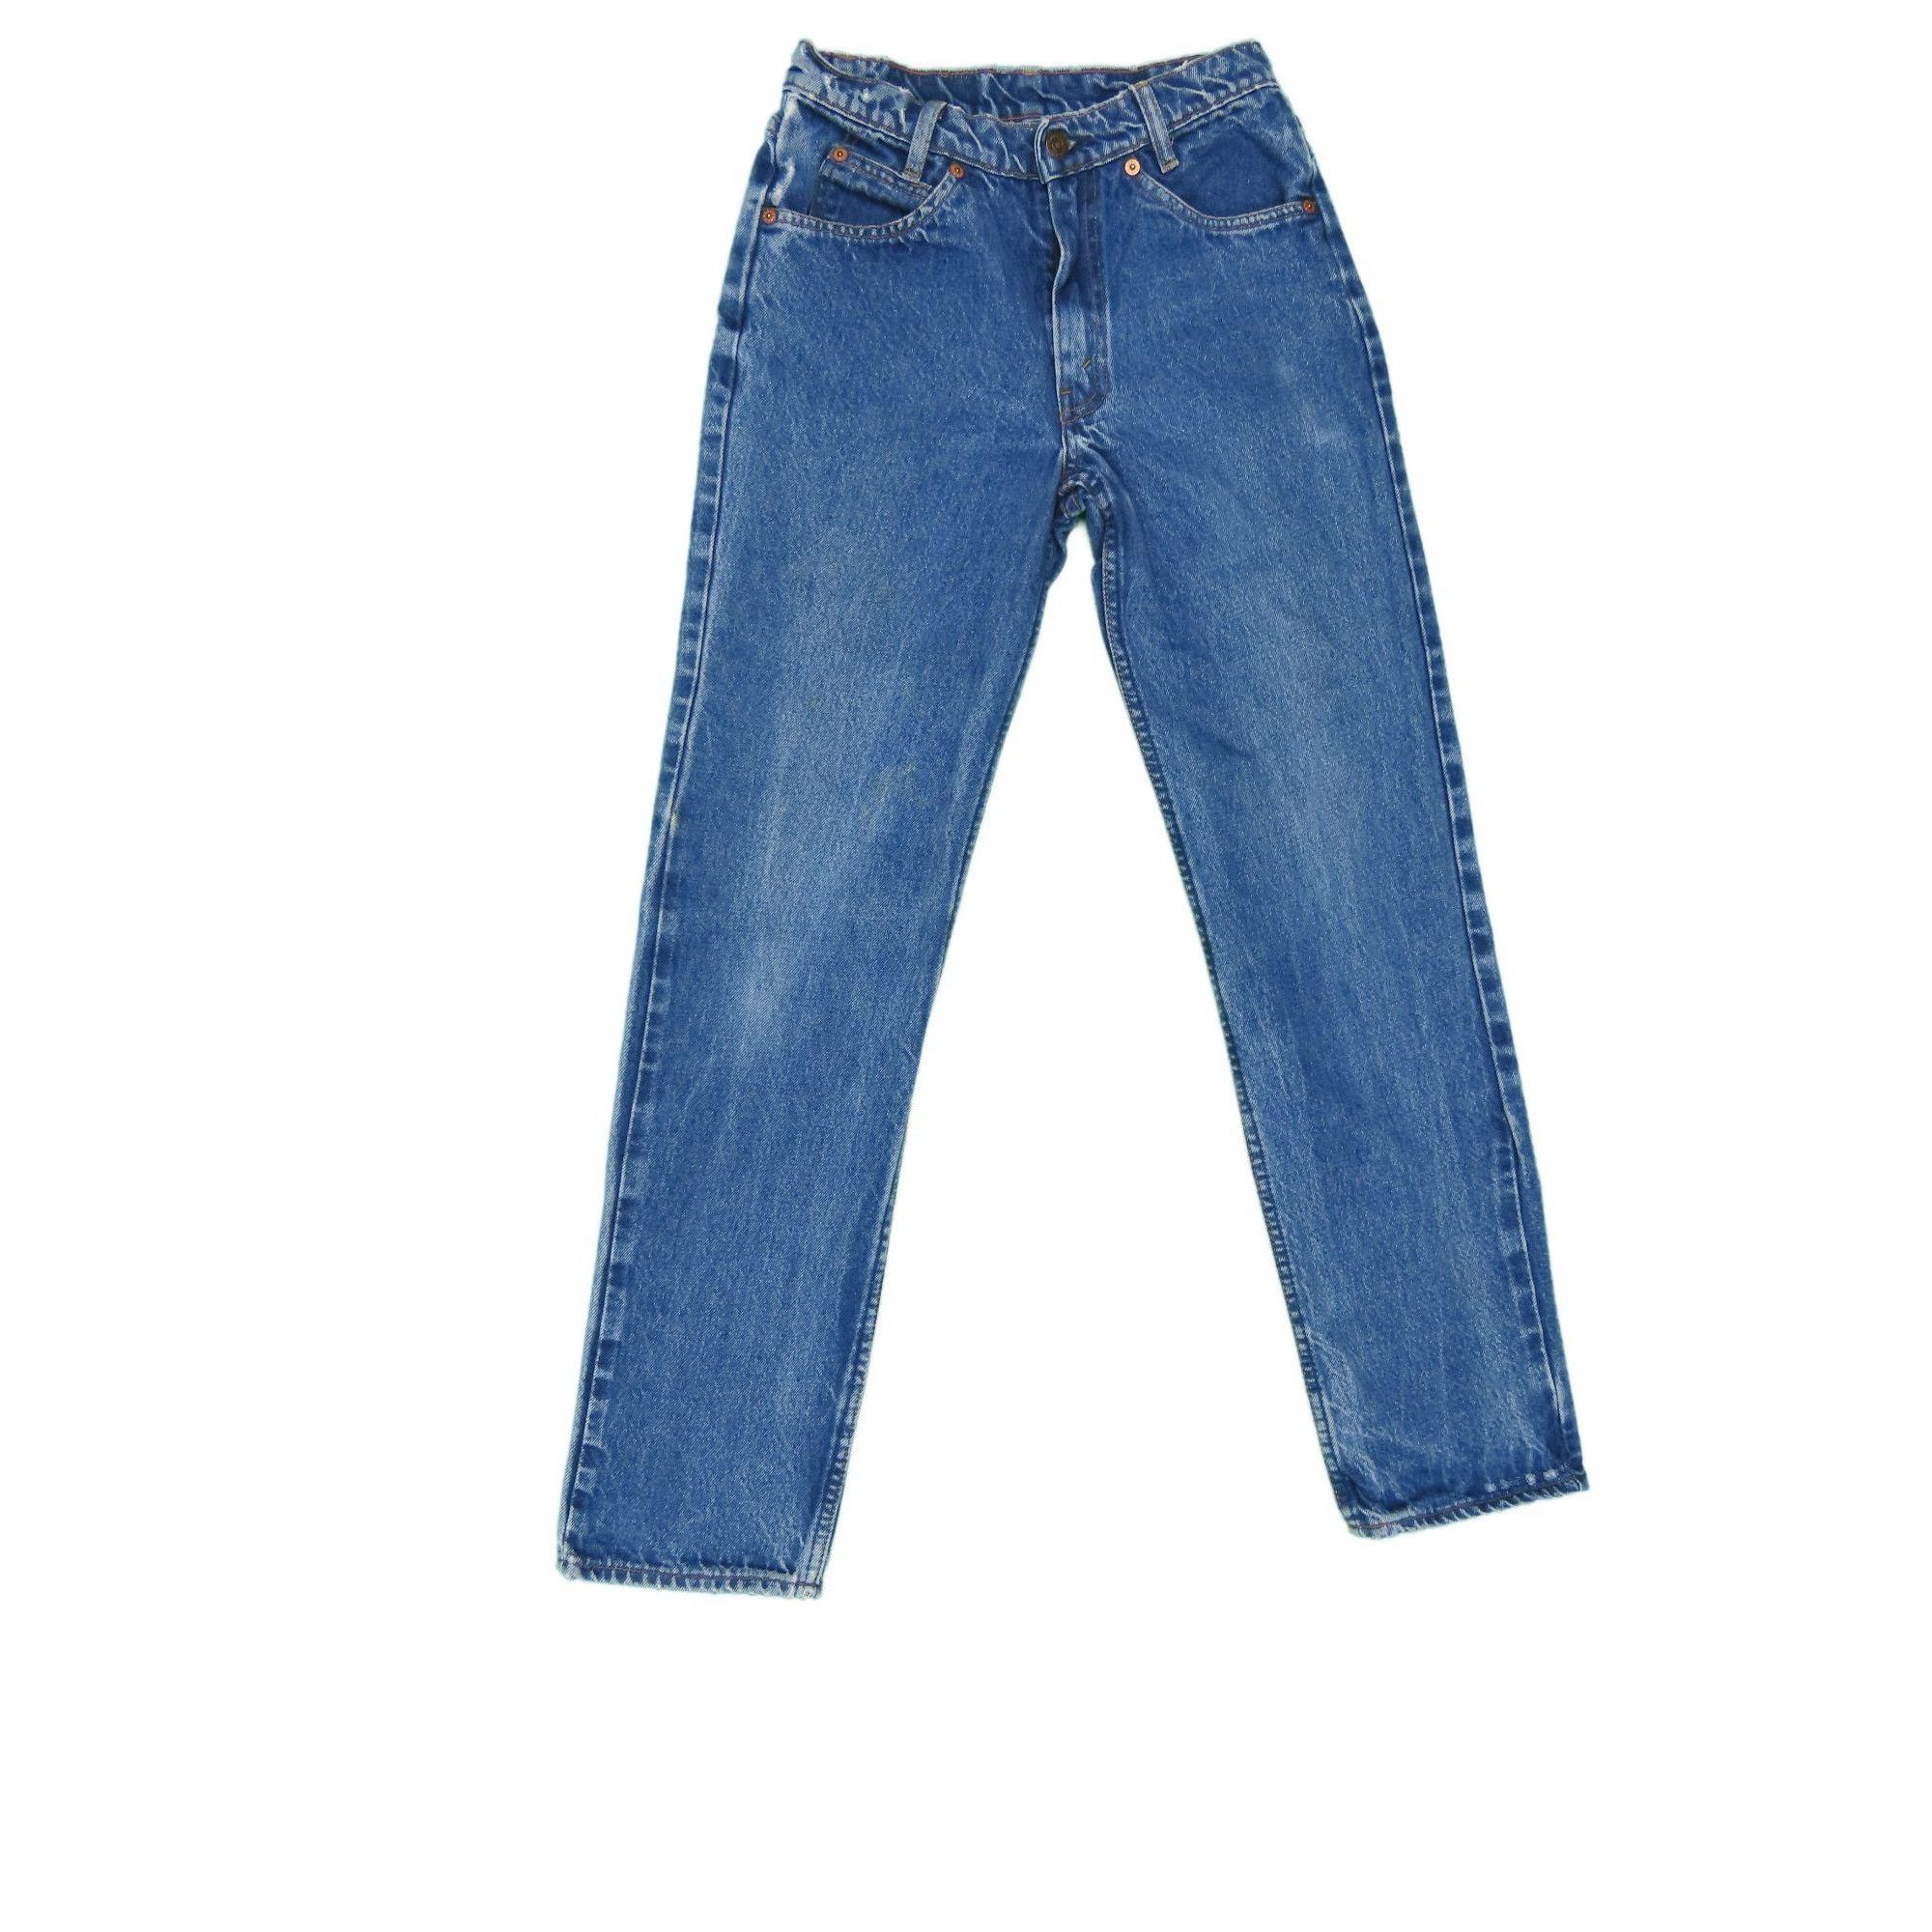 Vintage 1990s Vintage Levis 705 Jeans 26x29 Size US 26 / EU 42 - 1 Preview